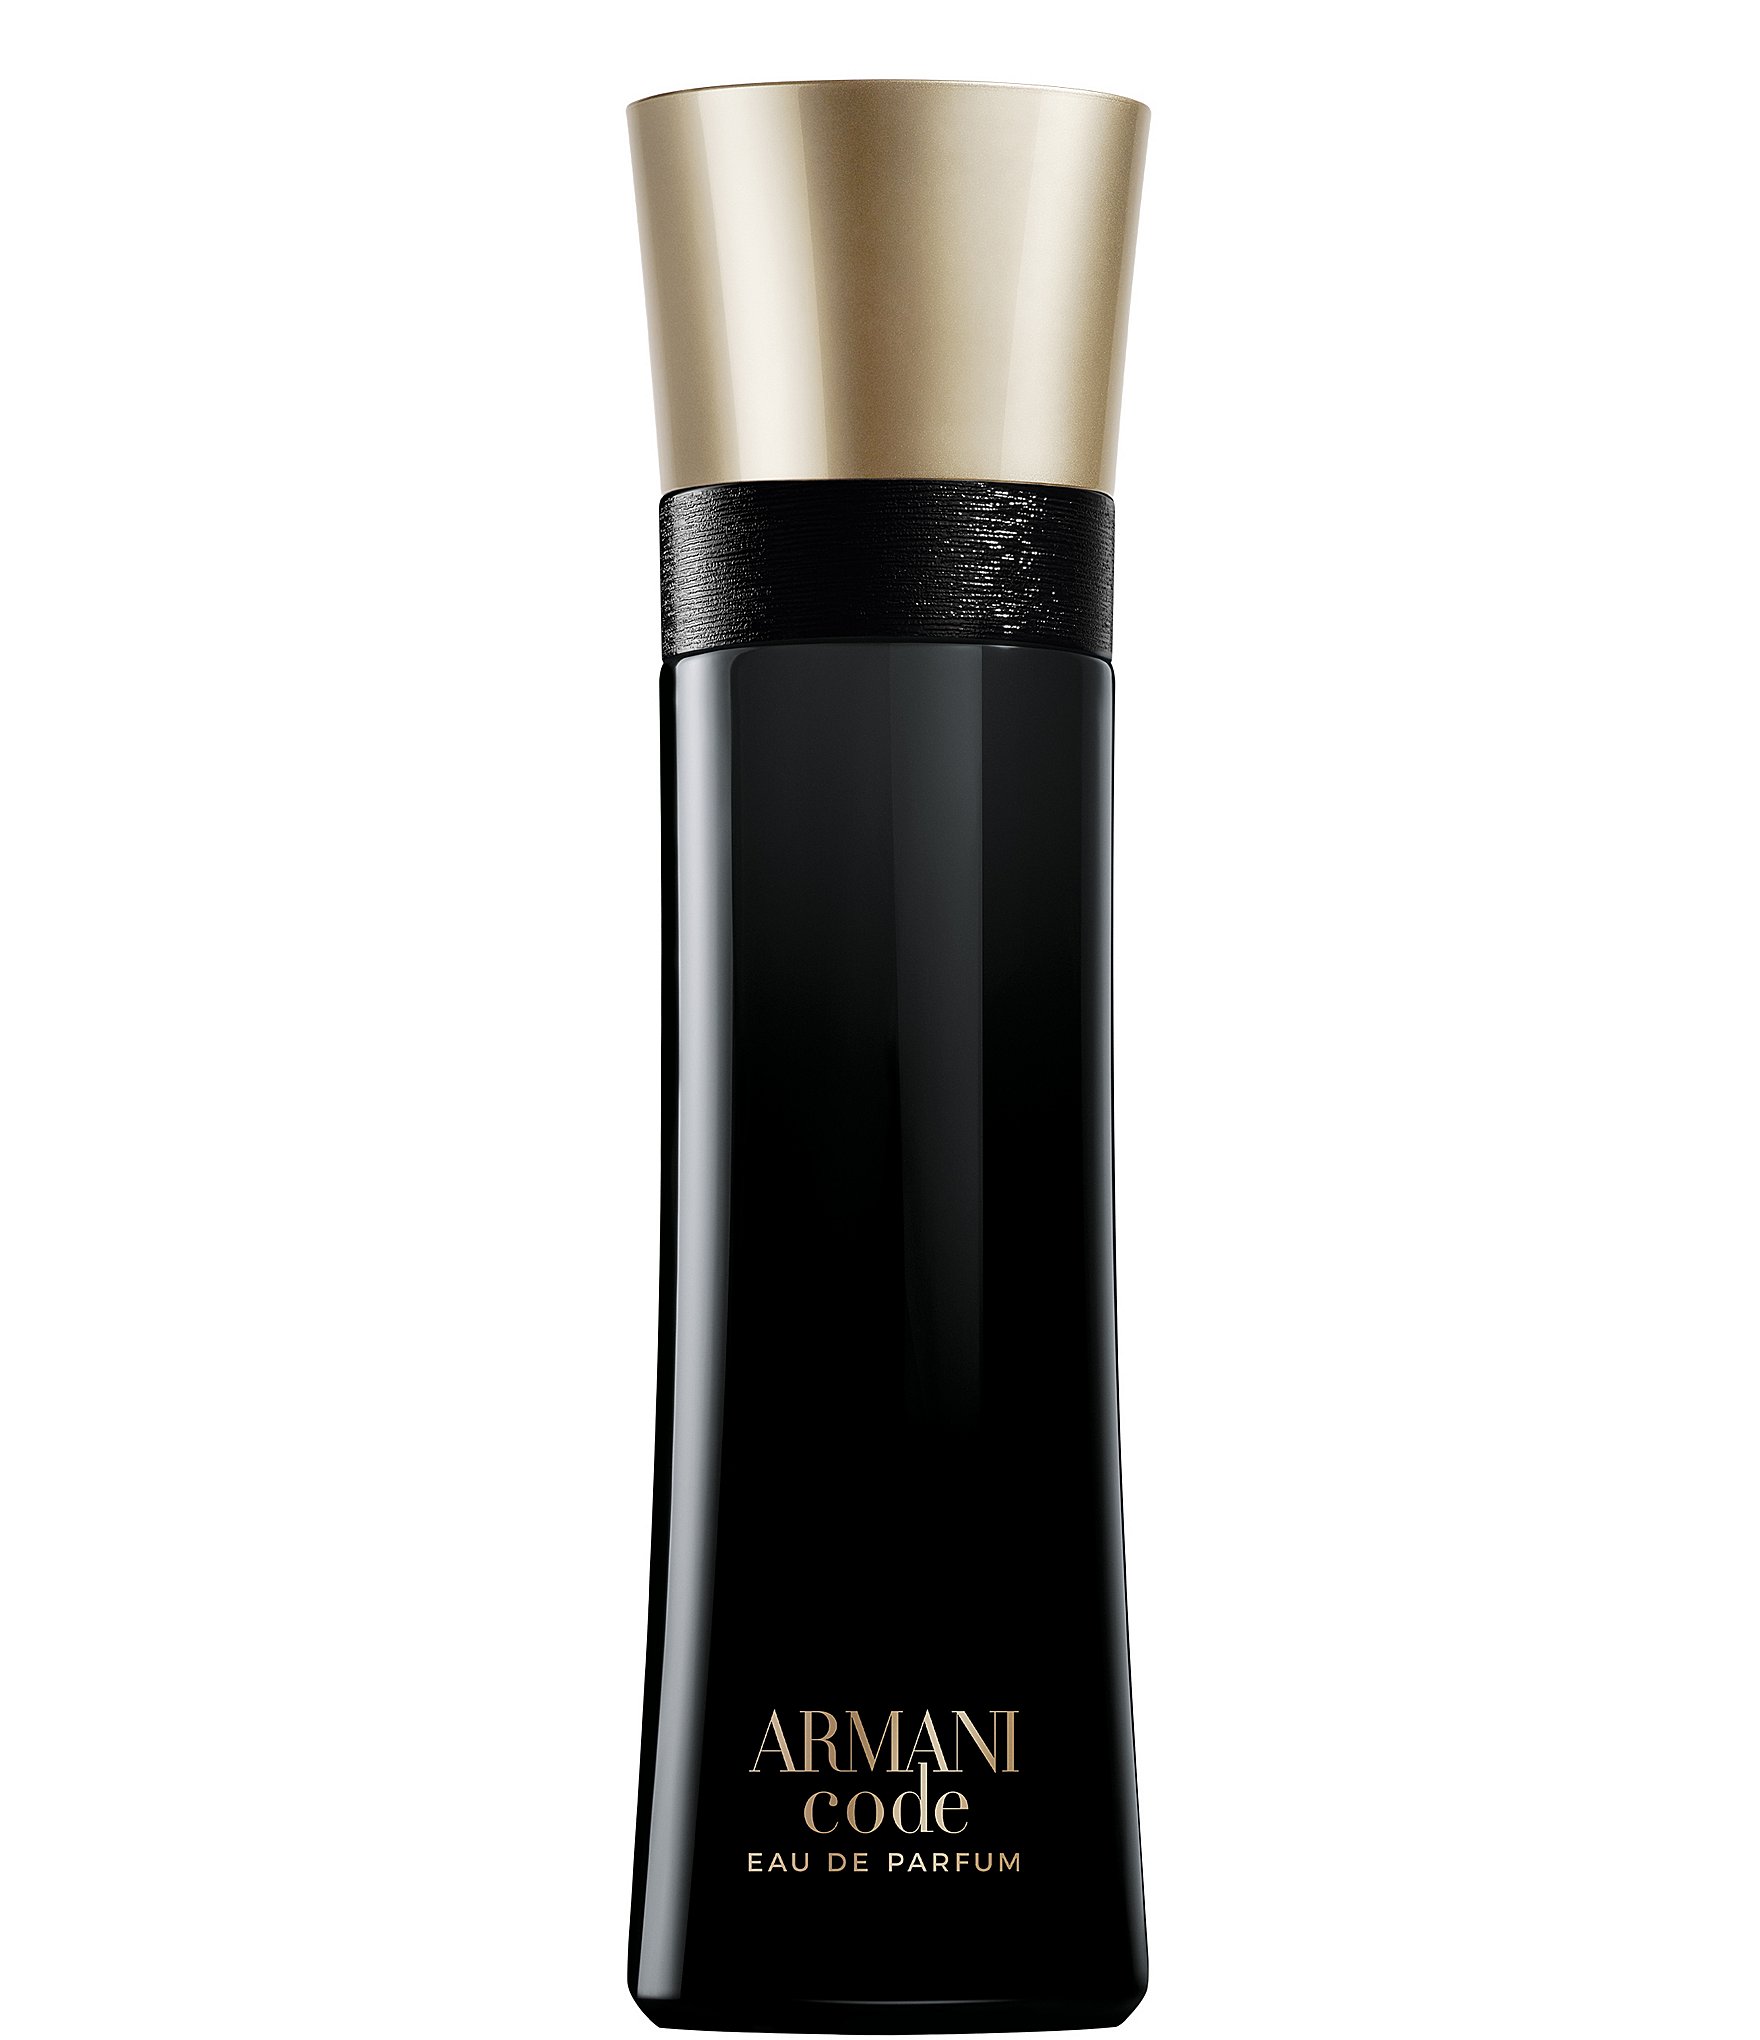 Armani Code Giorgio Armani cologne - a fragrance for men 2004